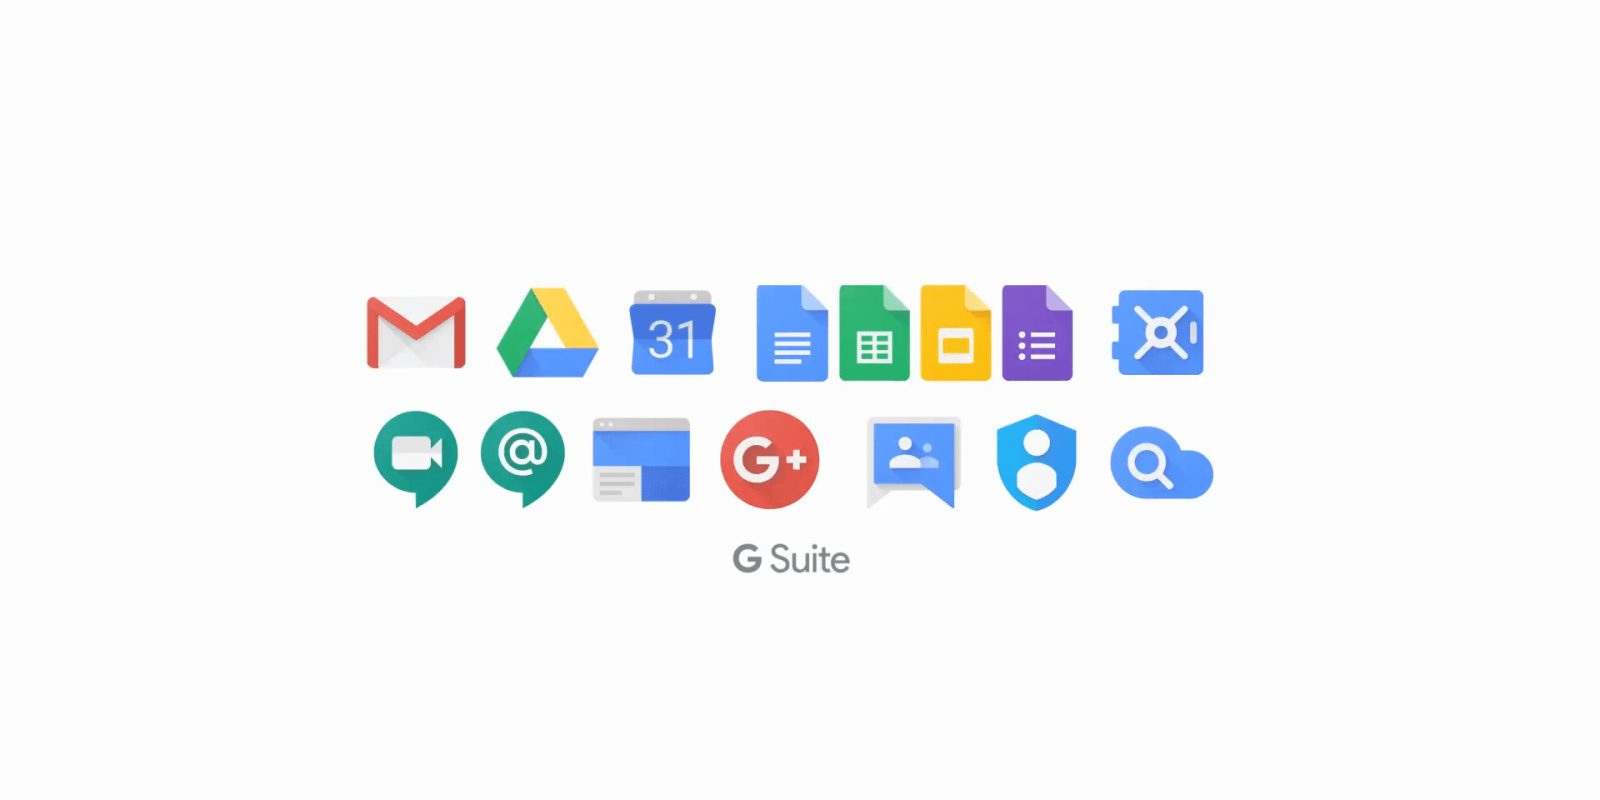 حزمة Google G Suite تكسر حاجز 2 مليار مستخدم نشط شهريًا